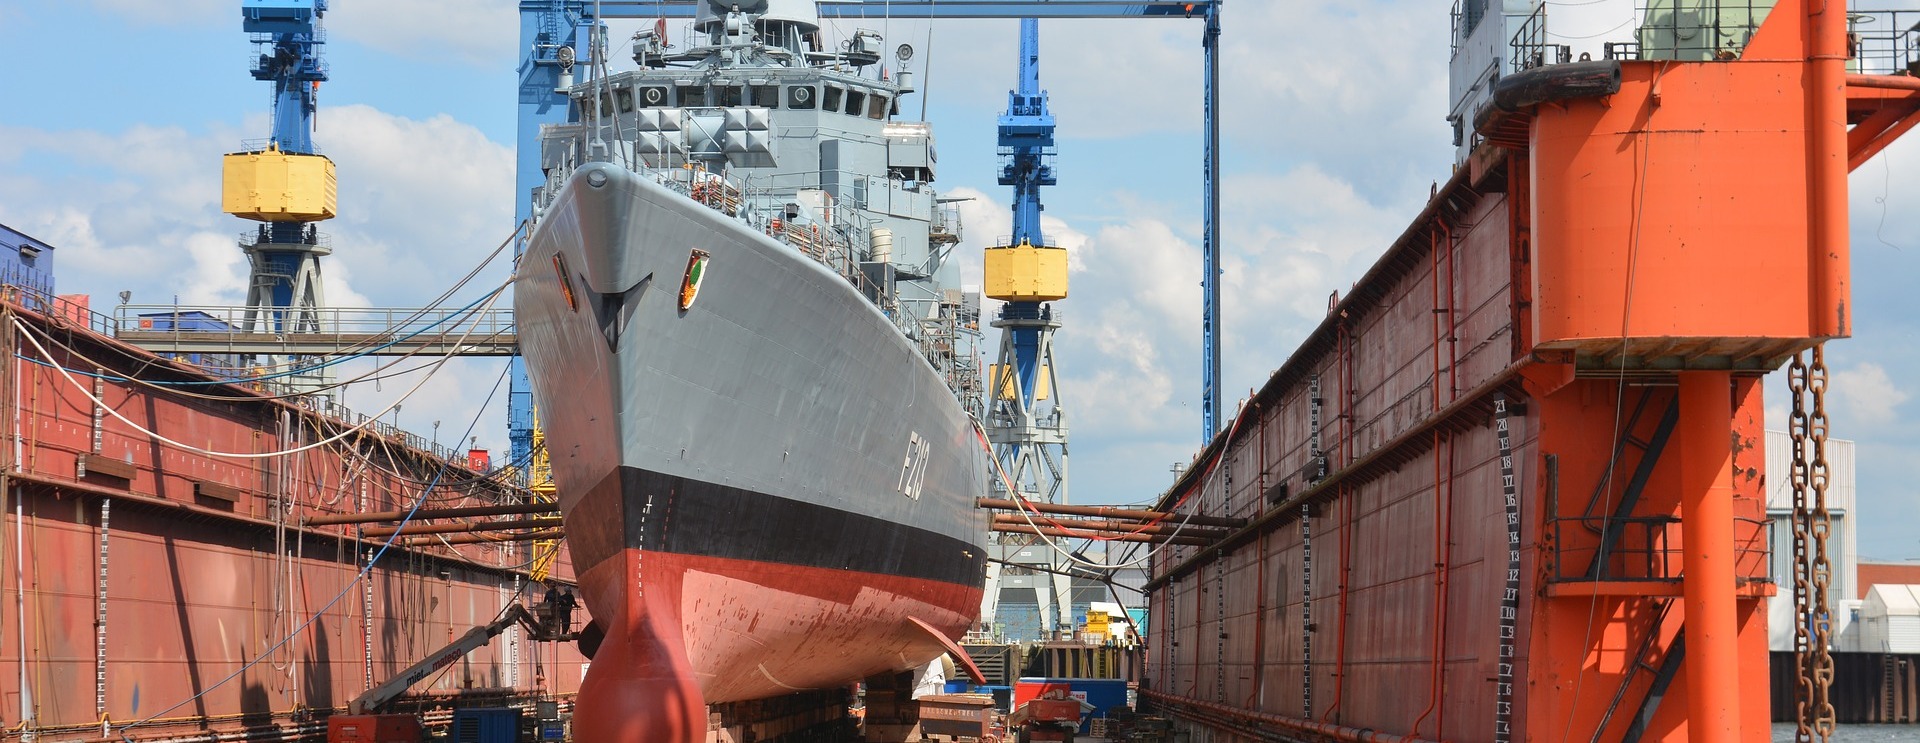 Mv Werften Shipyard